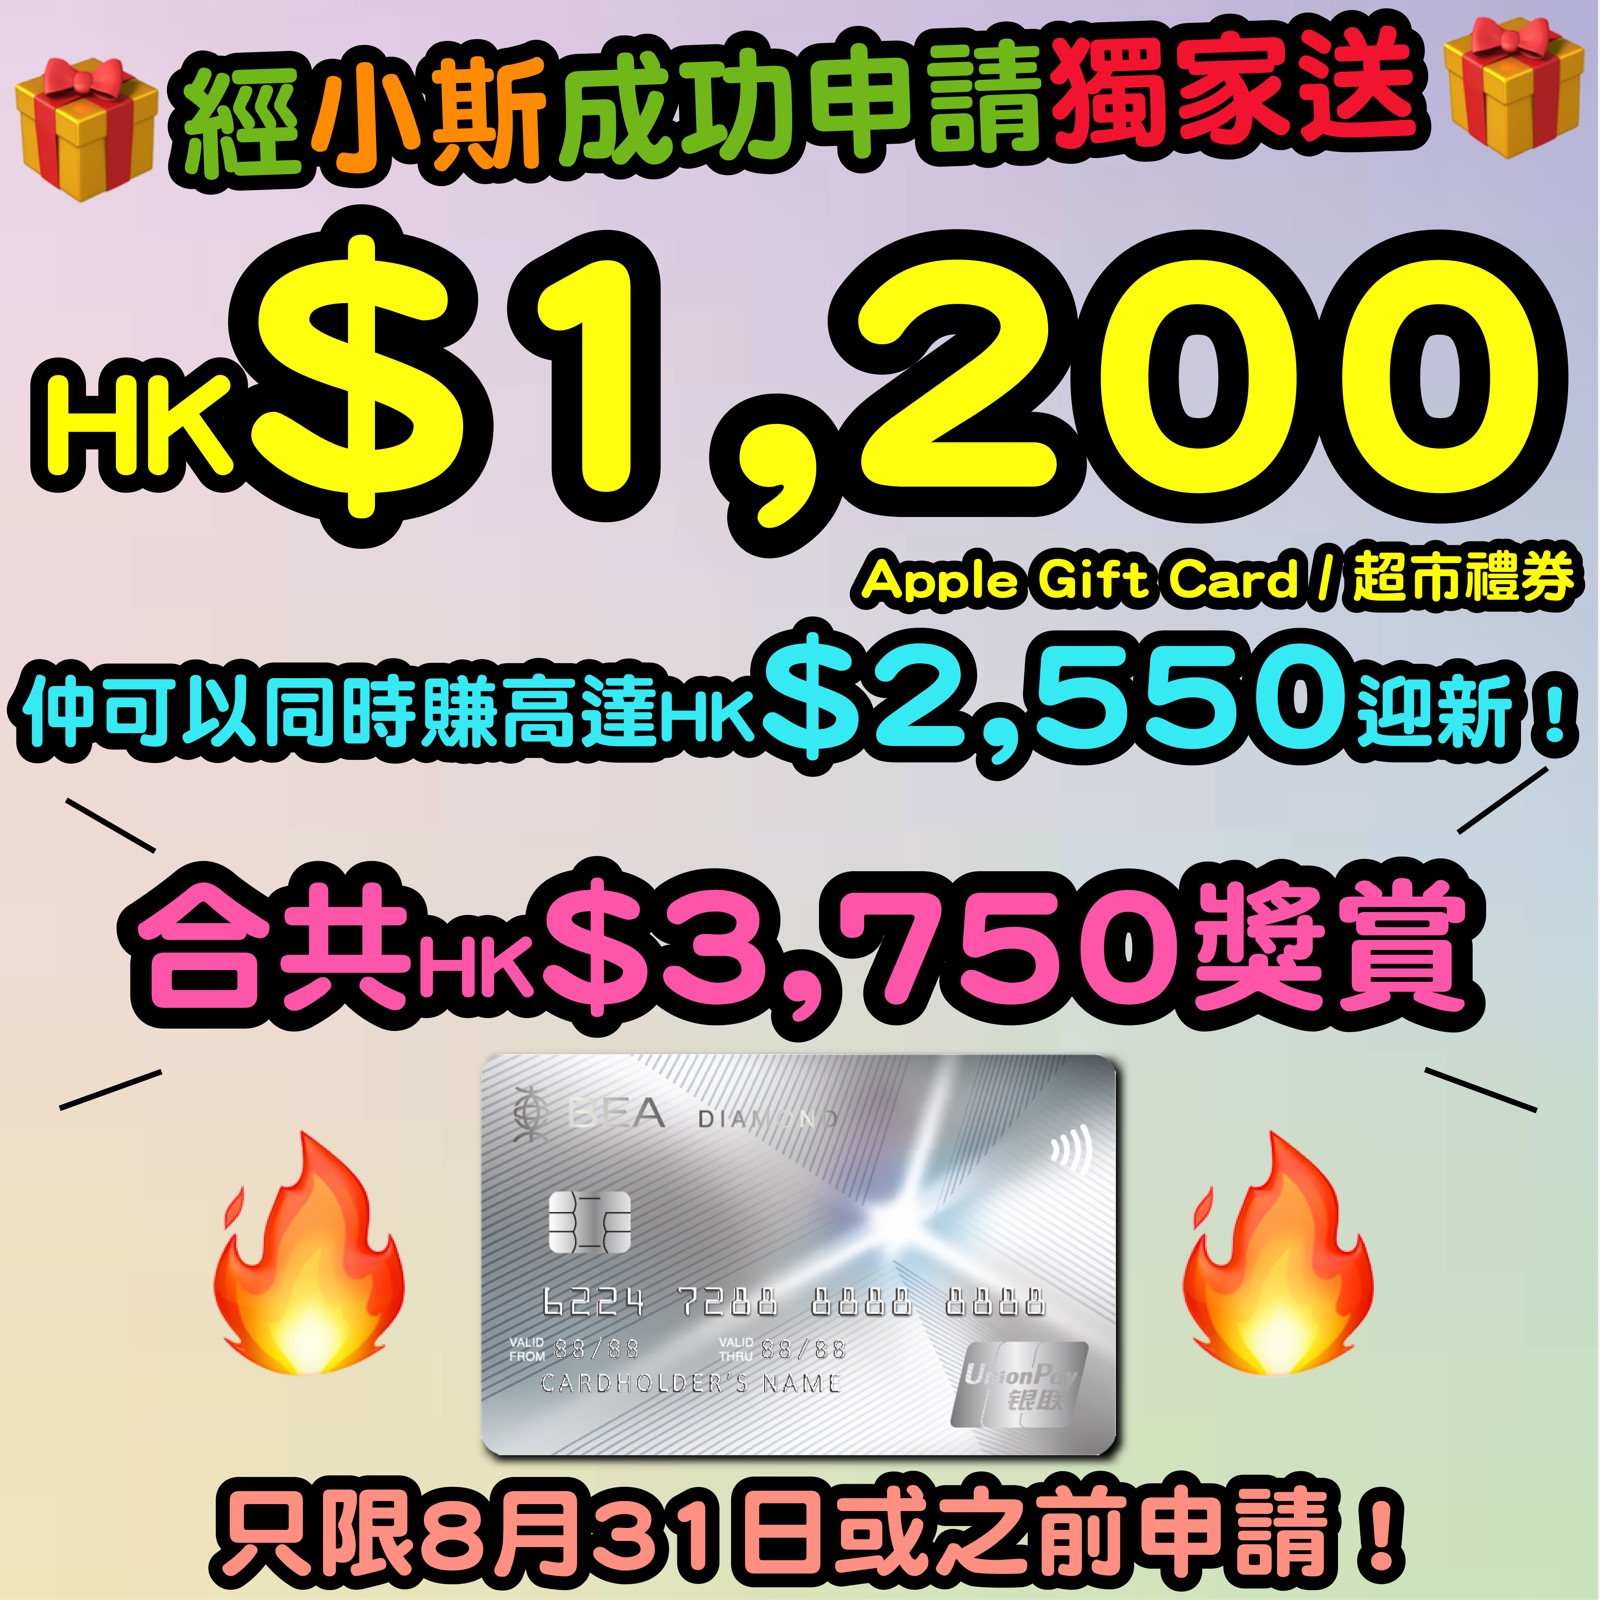 【東亞銀行銀聯雙幣鑽石信用卡小斯優惠】新客戶經小斯申請並用推薦碼「BEAUPD22」，簽賬HK$300有HK$400 Apple Gift Card 或 超市禮券！仲可以同時賺高達HK$2,550迎新！合共HK$2,950獎賞！